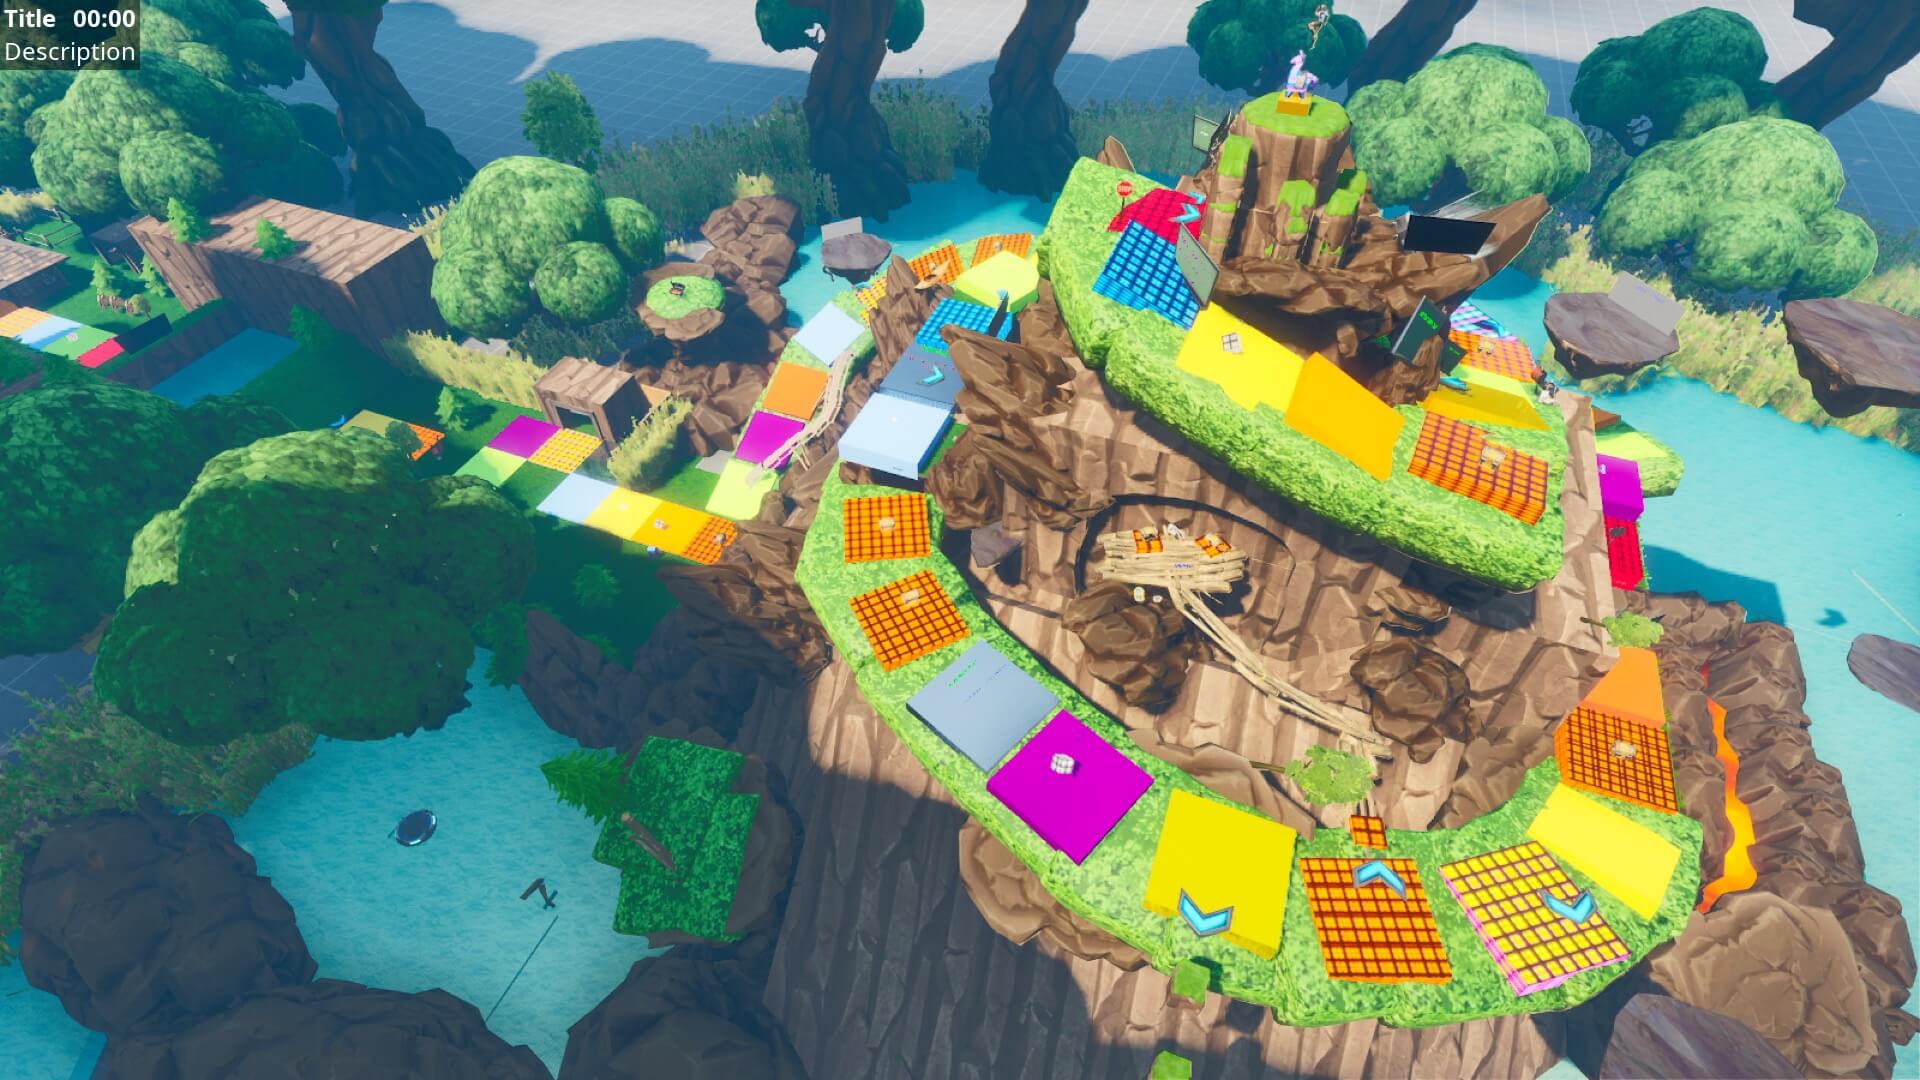 Fortnite Island Codes Layout Giant Island Board Game And Battle Fortnite Creative Map Code Dropnite